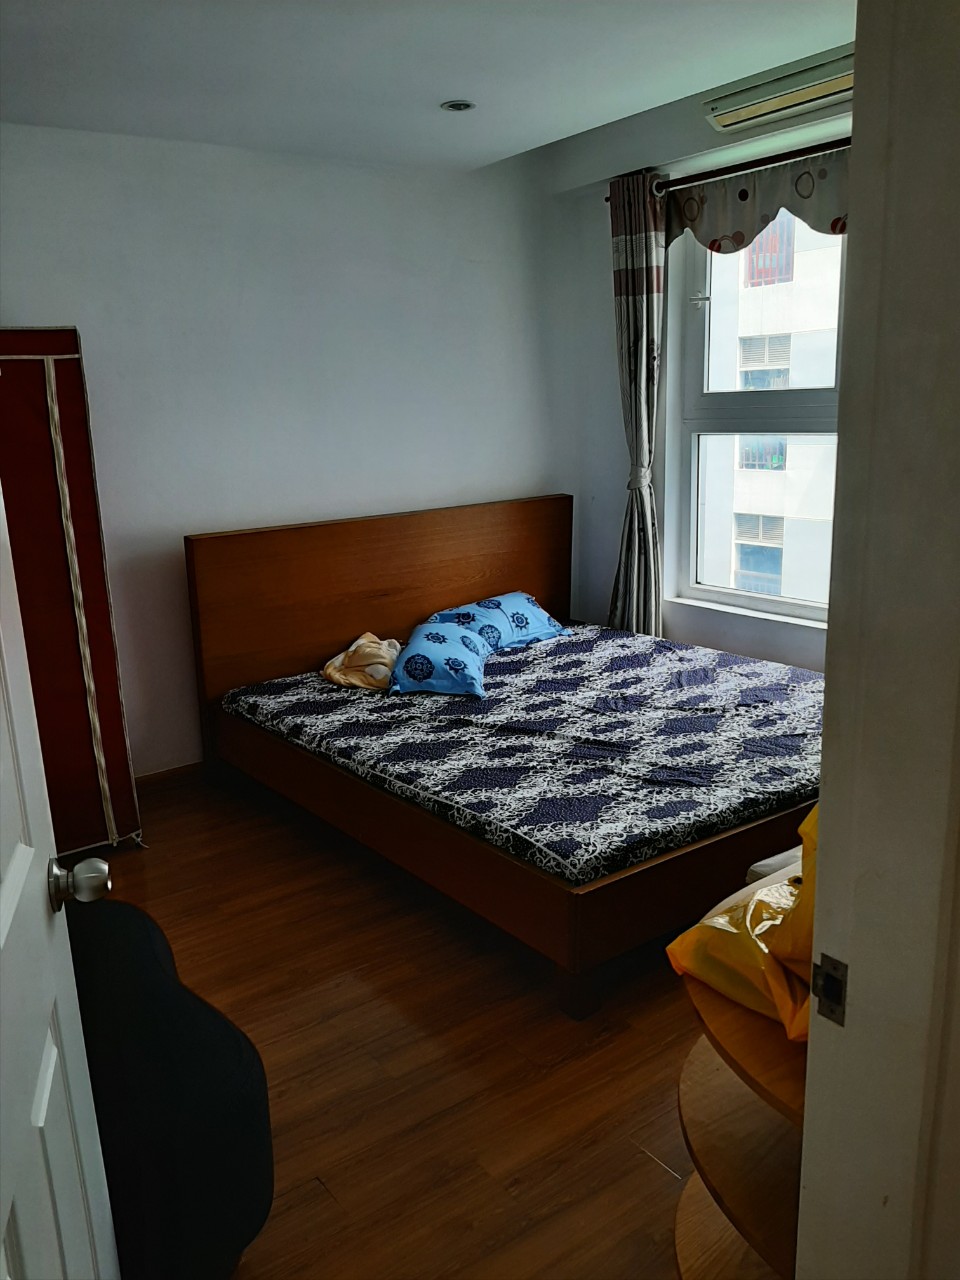 Cho thuê căn hộ Ruby Garden Tân Bình 95m2, 2 phòng ngủ giá 8.5tr Lh 0977489379 Mr Tuấn